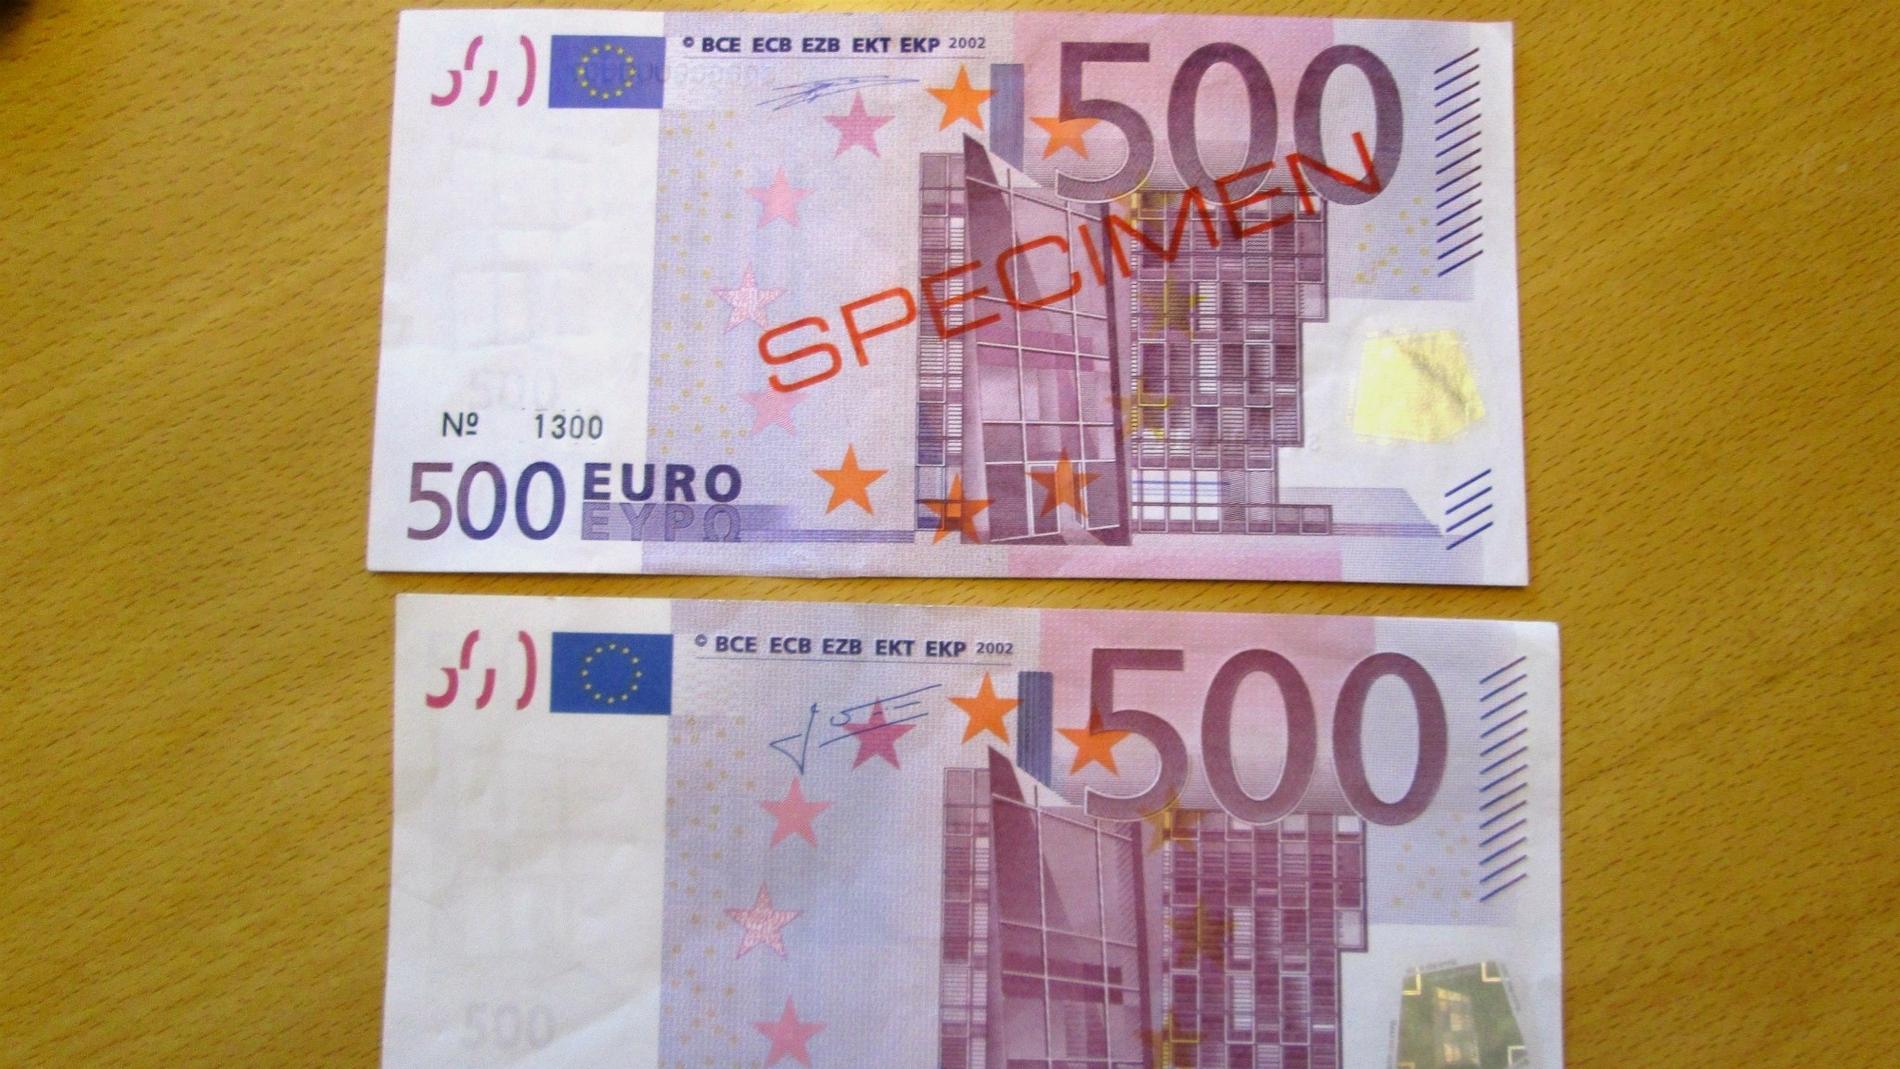 Här jämförs en falsk 500 eurosedel (nederst) mot en äkta sedel.